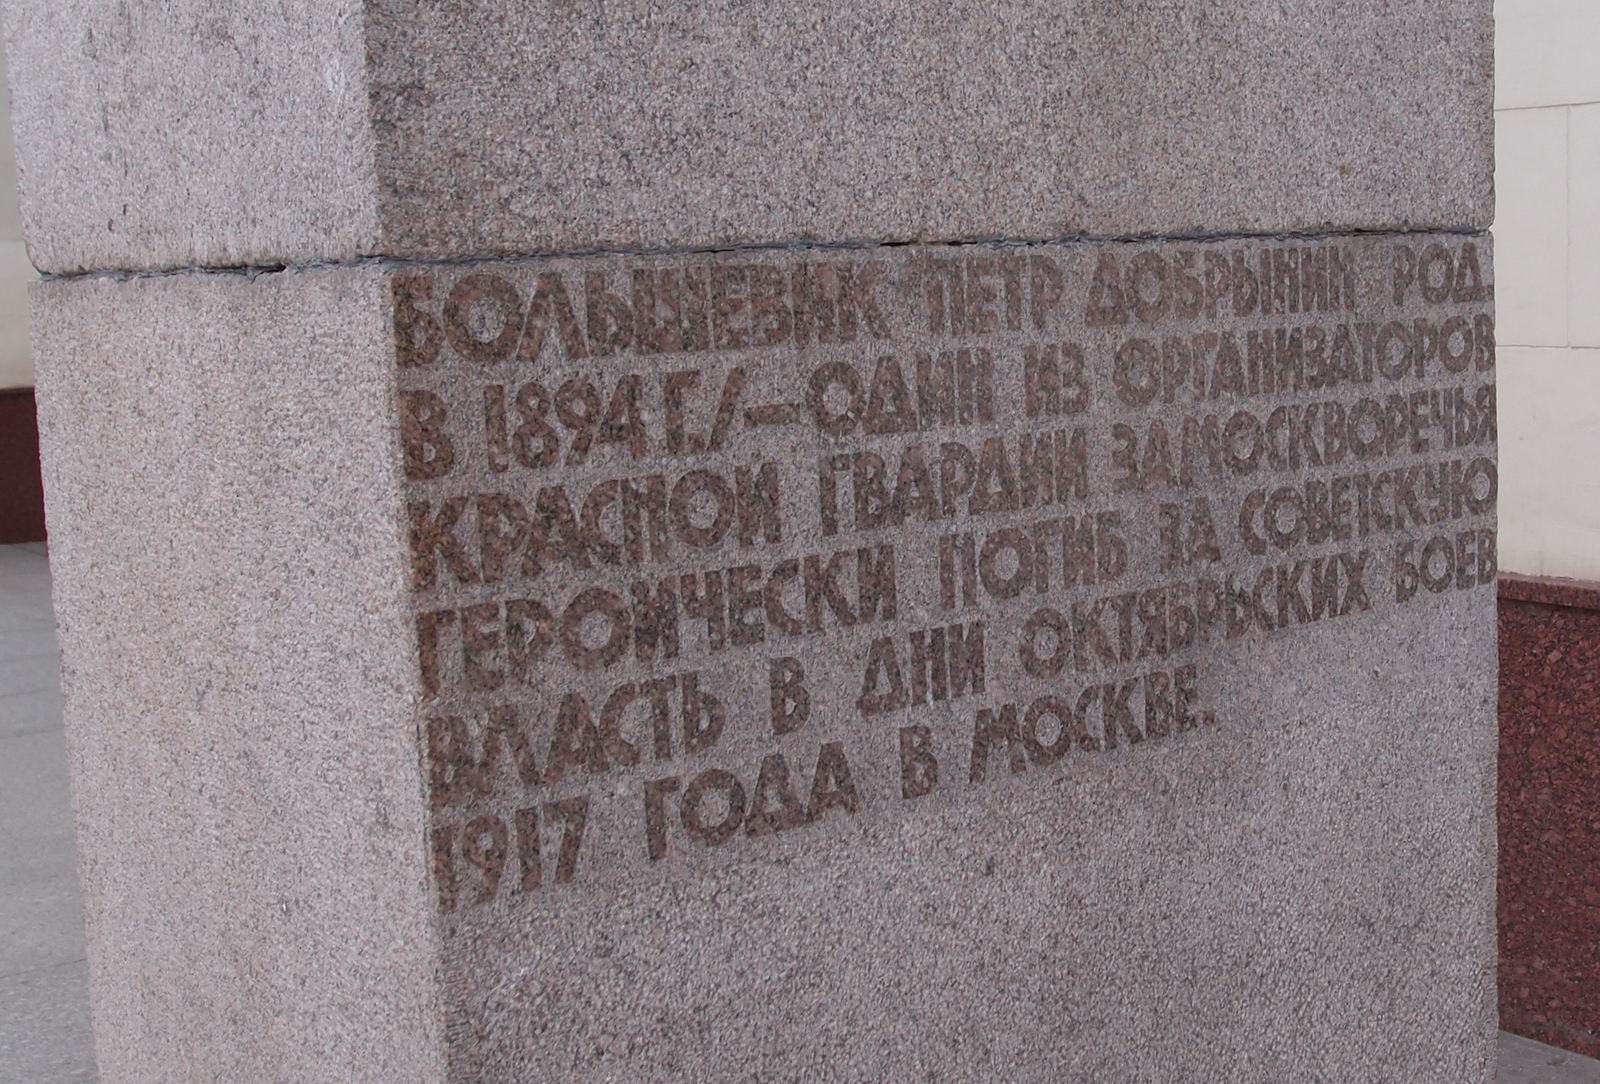 Памятник Добрынину П.Г. (1895–1917), ск. Г.Д.Распопов, арх. В.М.Пясковский, на Серпуховской площади у вестибюля станции метро «Добрынинская», открыт в 1967.